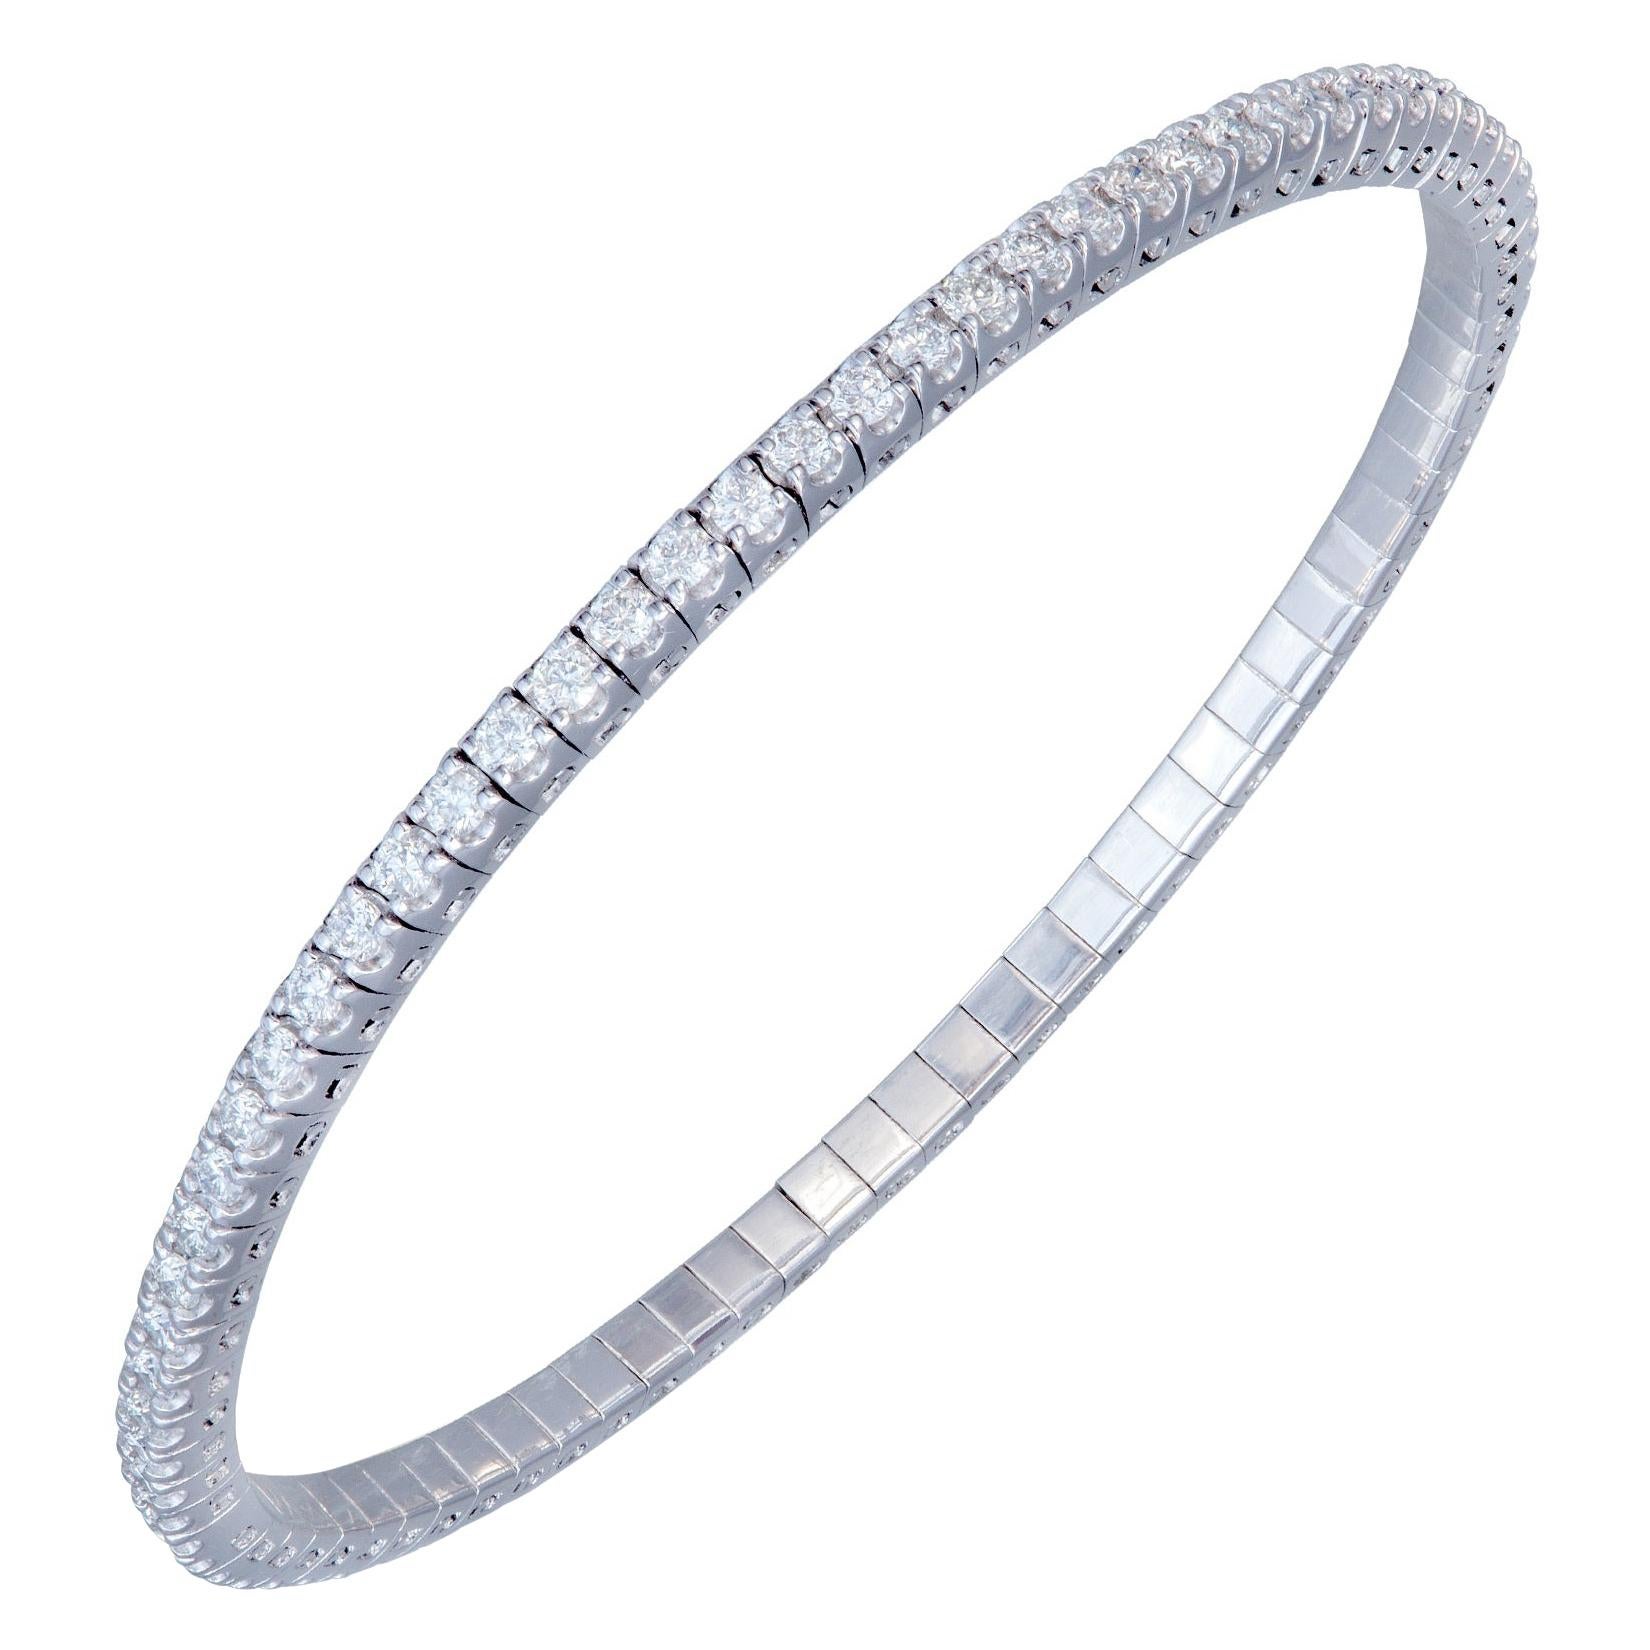 Bracelet tennis extensible en or blanc 18 carats avec diamants 1,69 carat/68 pièces